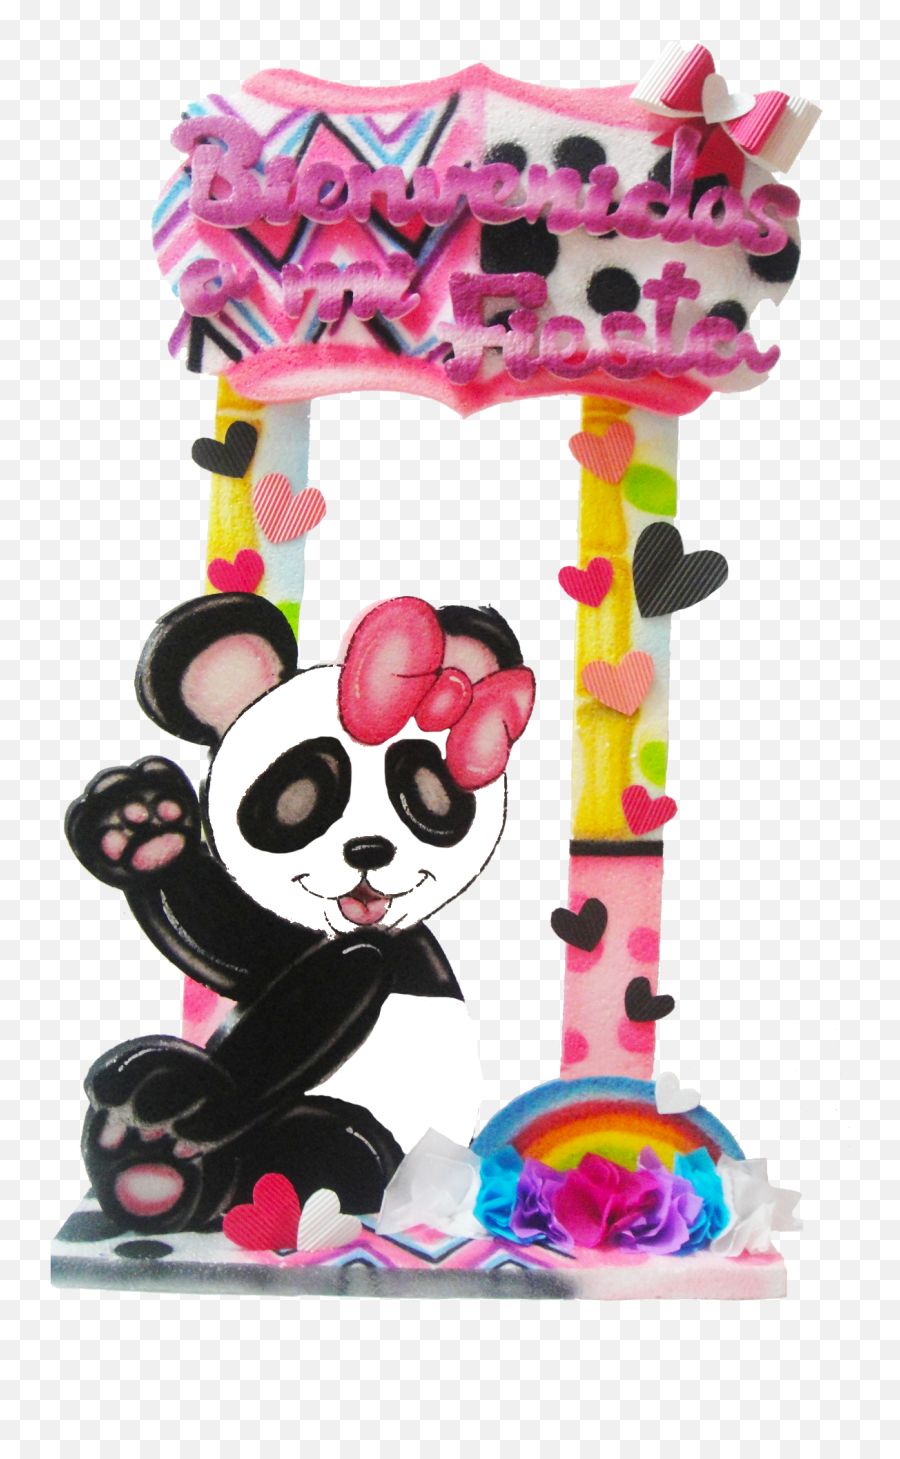 Bienvenido Paral - Bienvenido De Panda De Niña Emoji,Figuras De Plastilina Kawaii Helado Emoticon